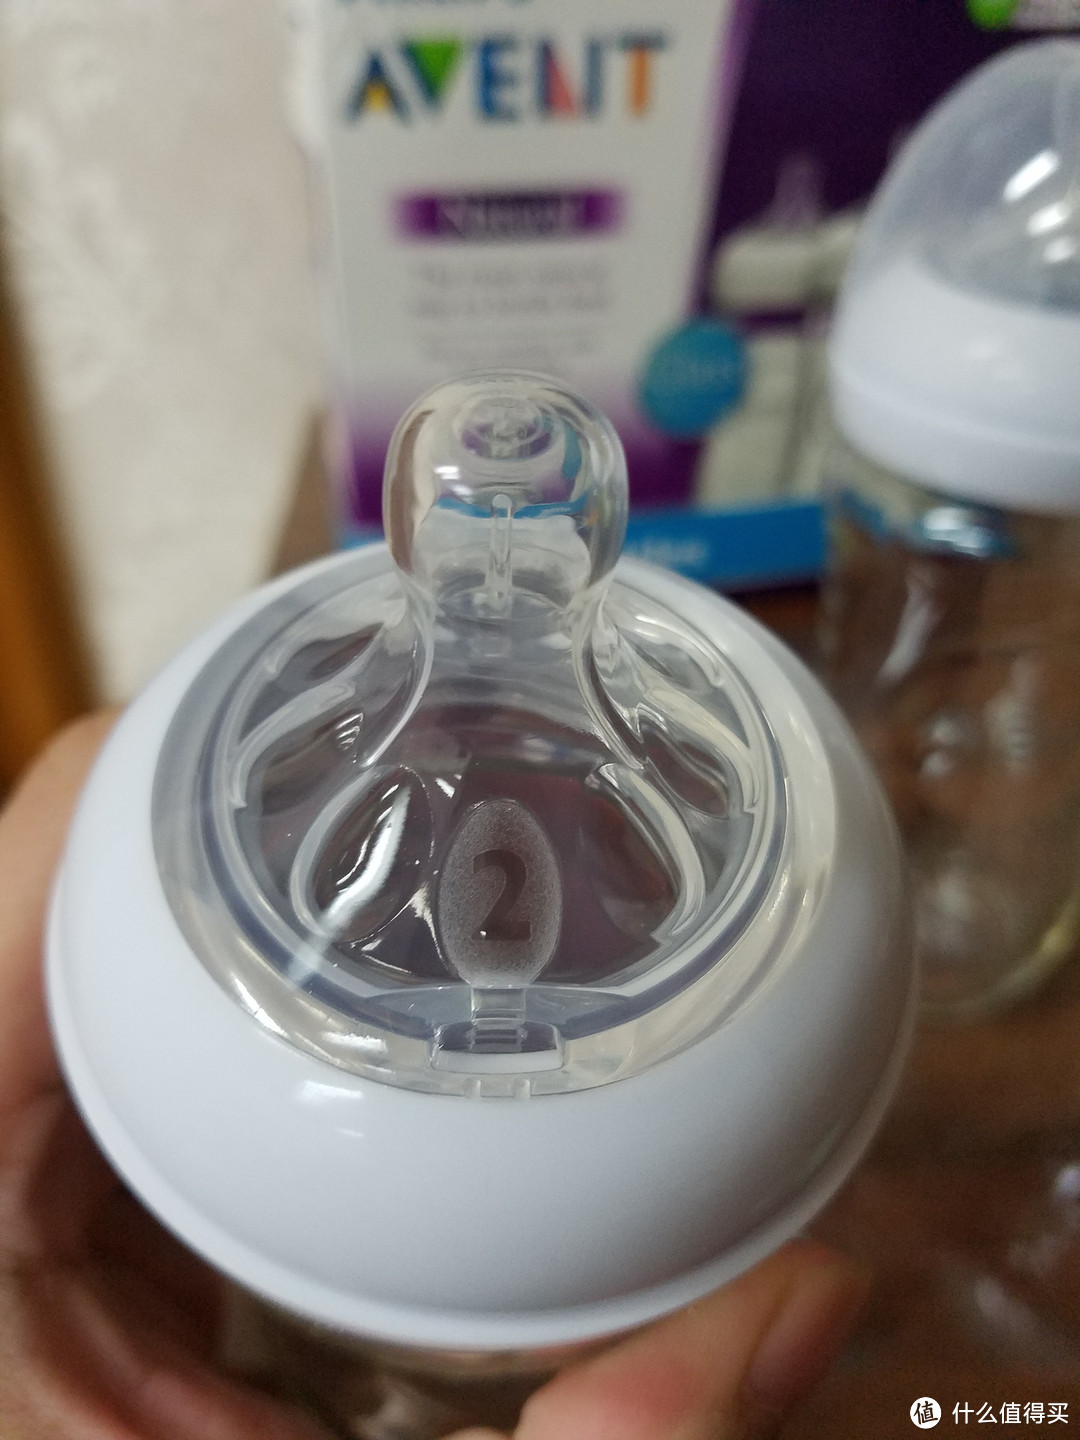 折合56元一个的8安士新安怡玻璃奶瓶是否值得购买？